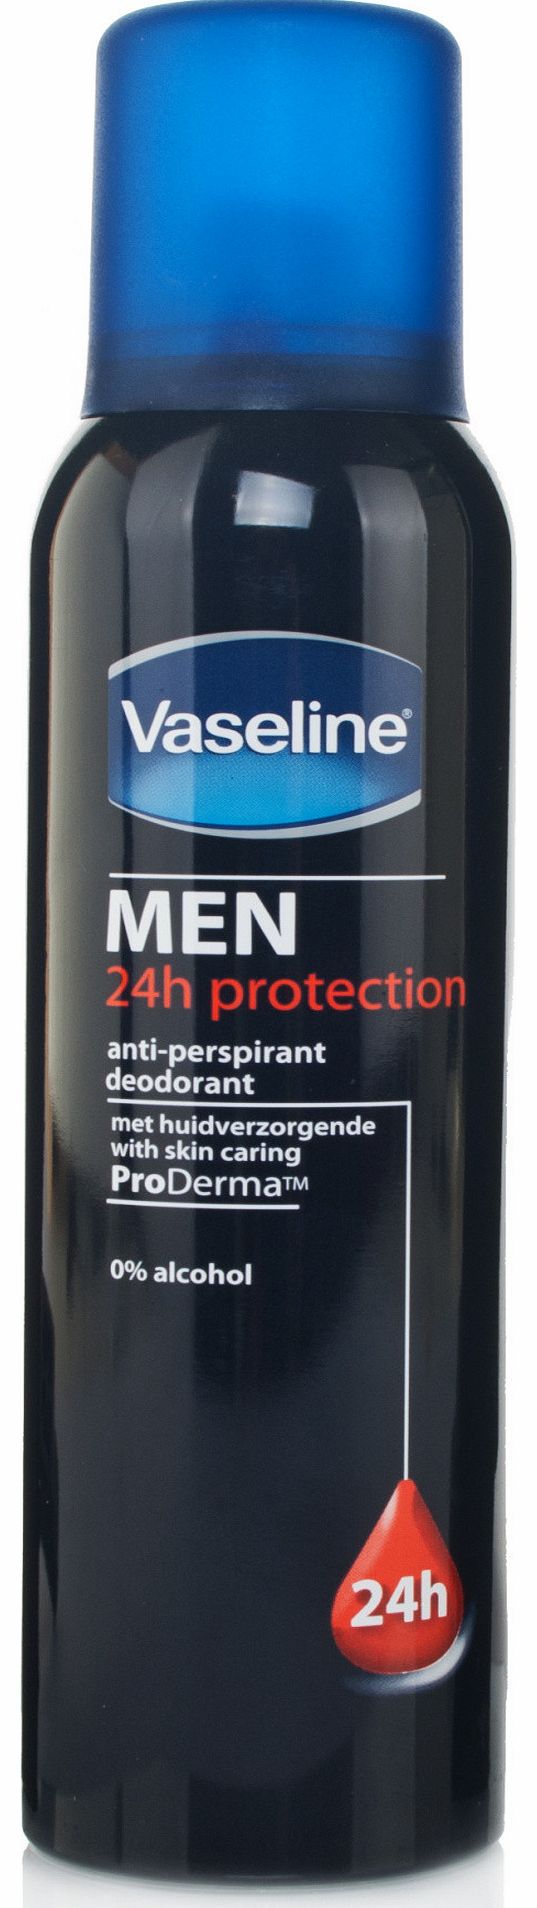 Vaseline Deodorant For Men